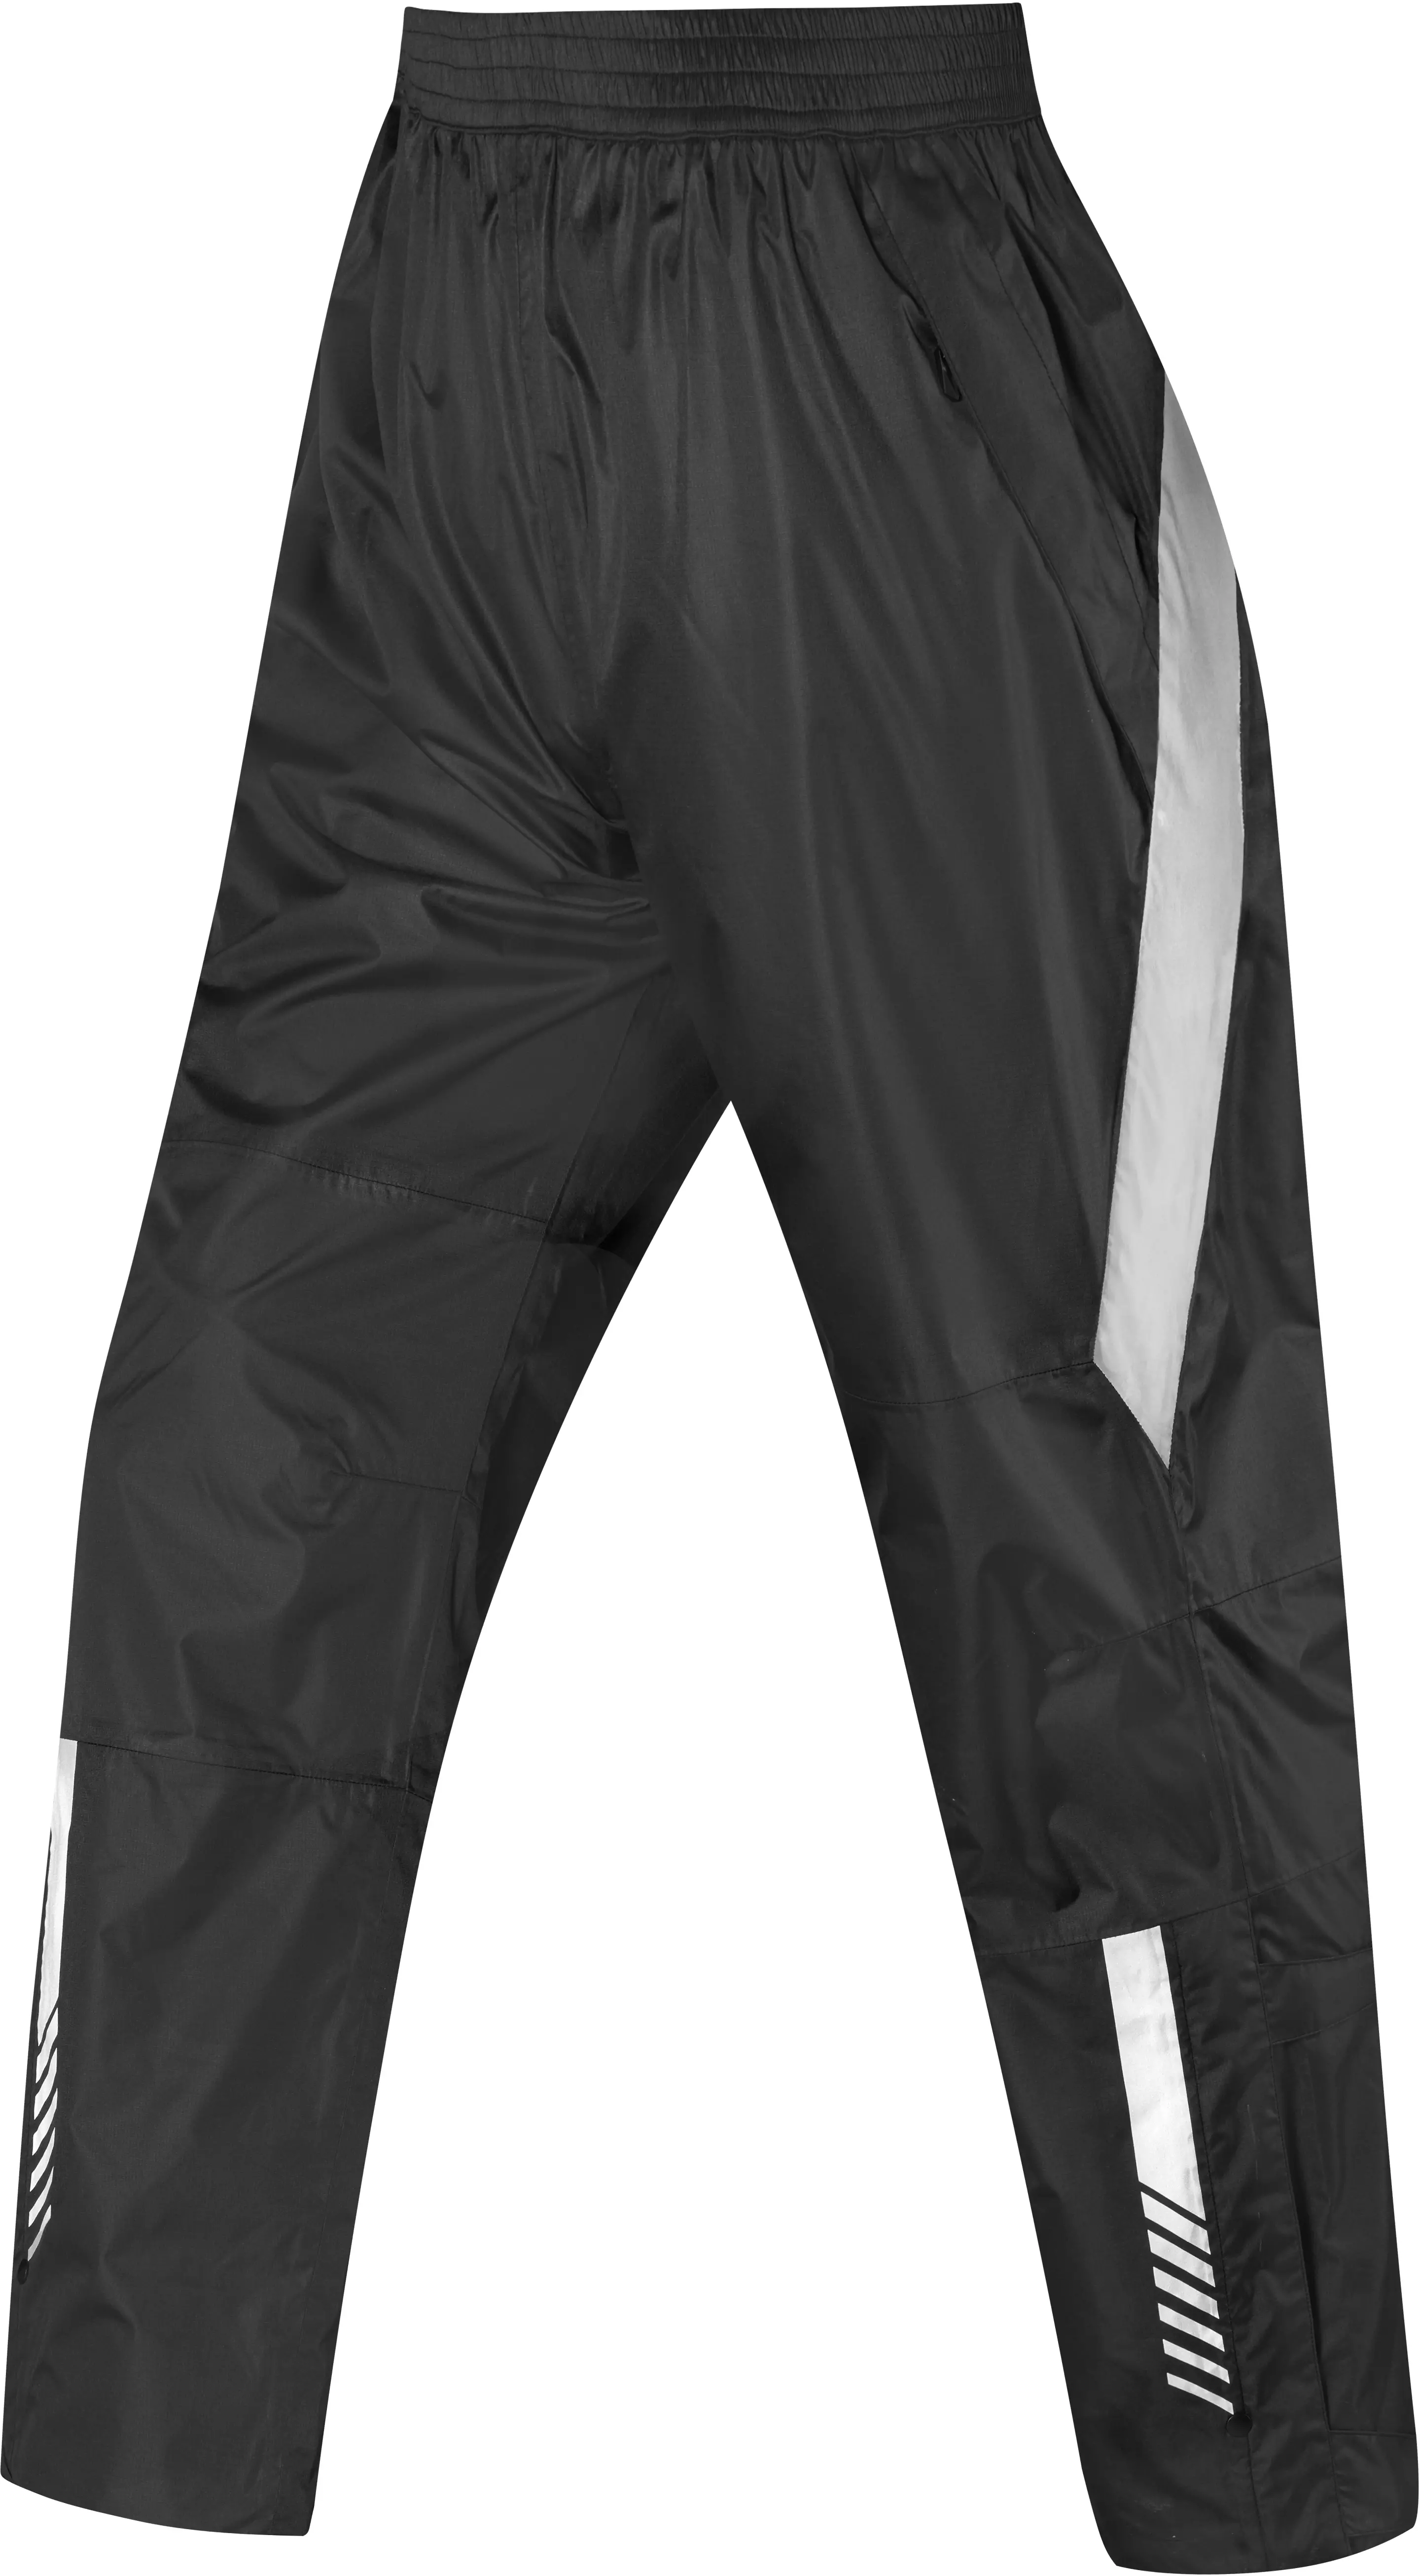 Proviz REFLECT360 Women's Tailored Reflective Waterproof Cycling Trousers |  eBay